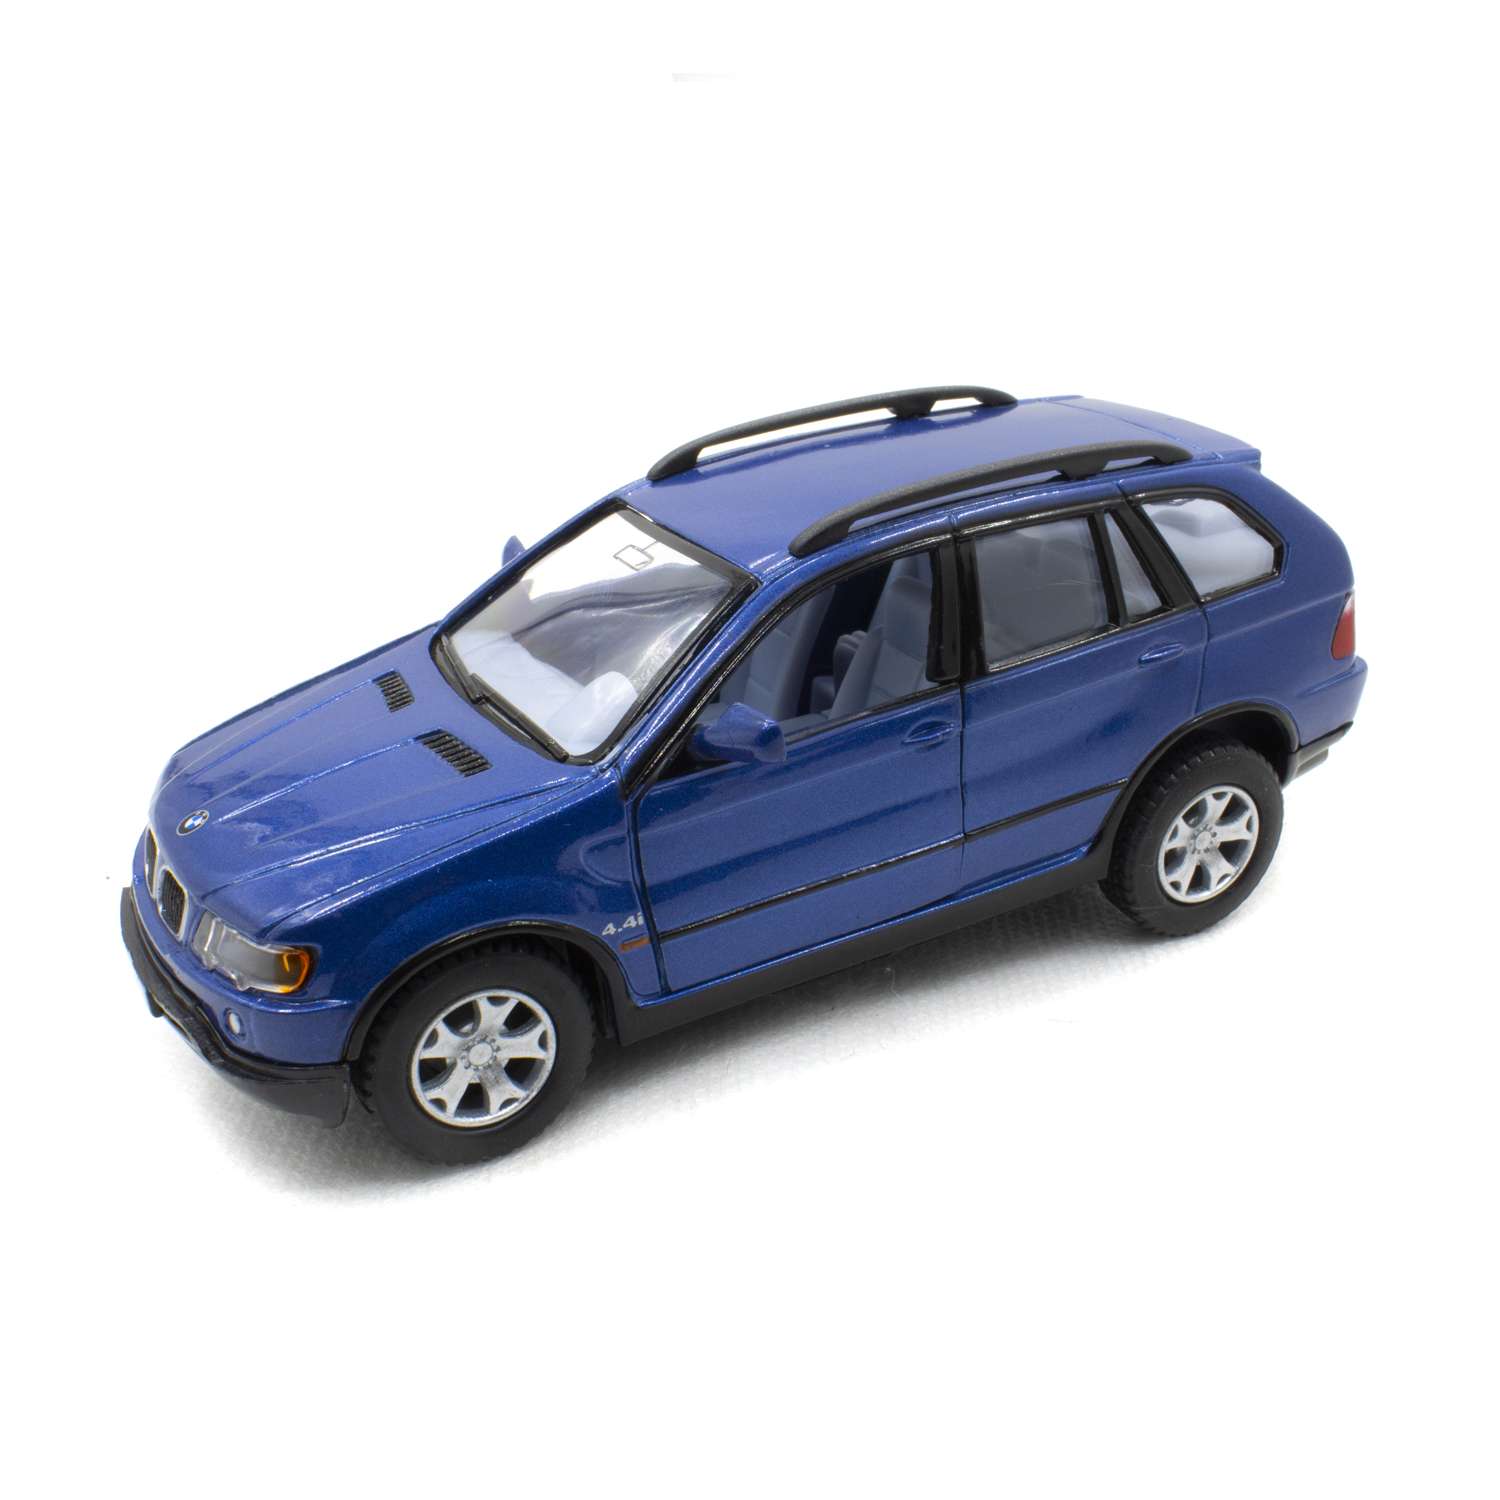 Модель автомобиля KINSMART BMW X5 синий АМ002/4 - фото 1